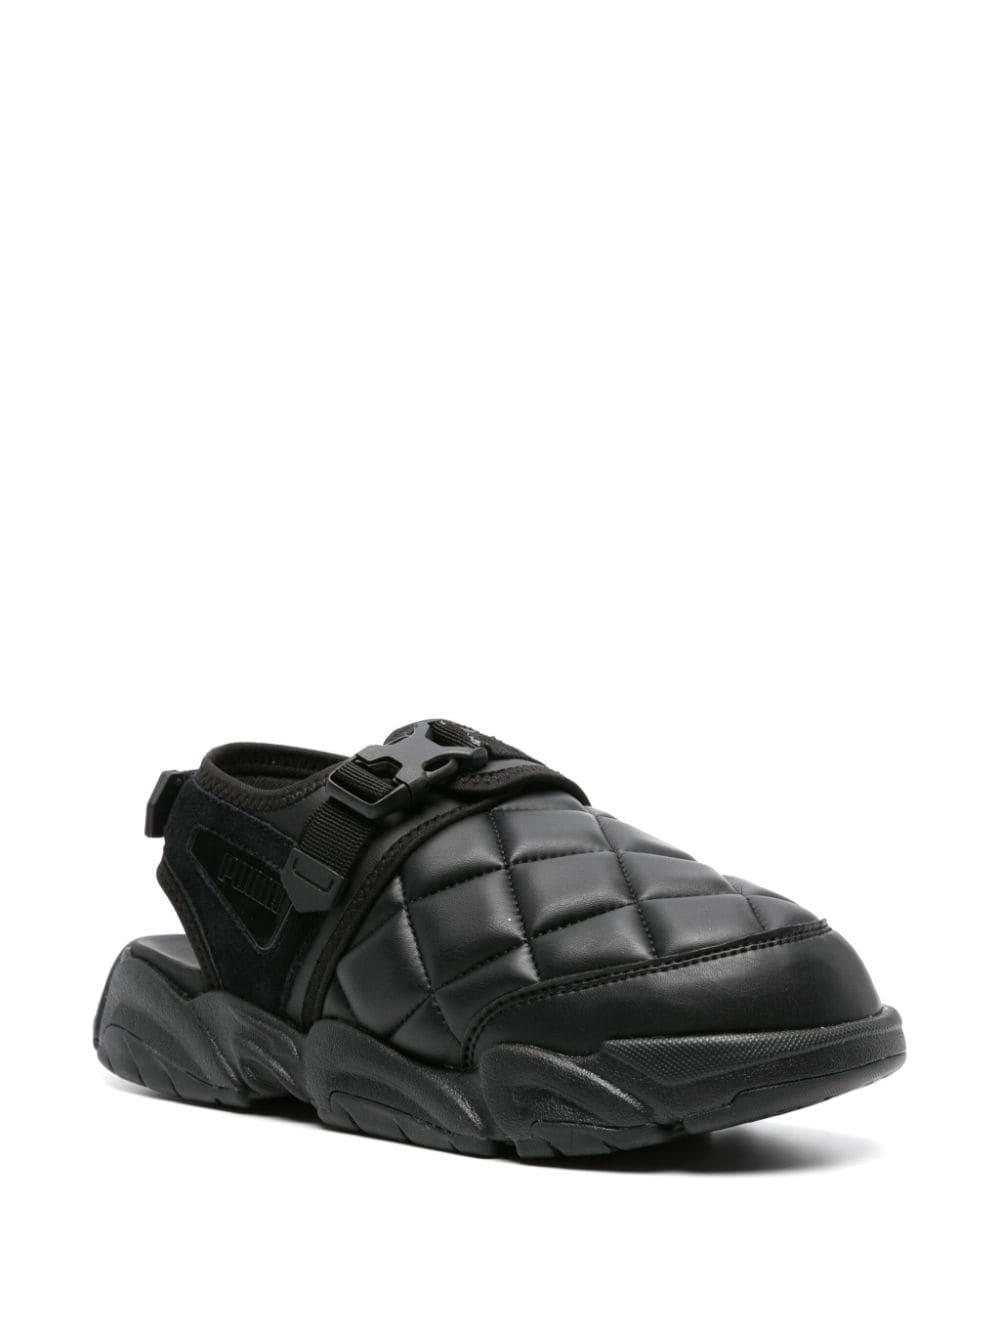 PUMA x Pleasures quilted sandals - Black